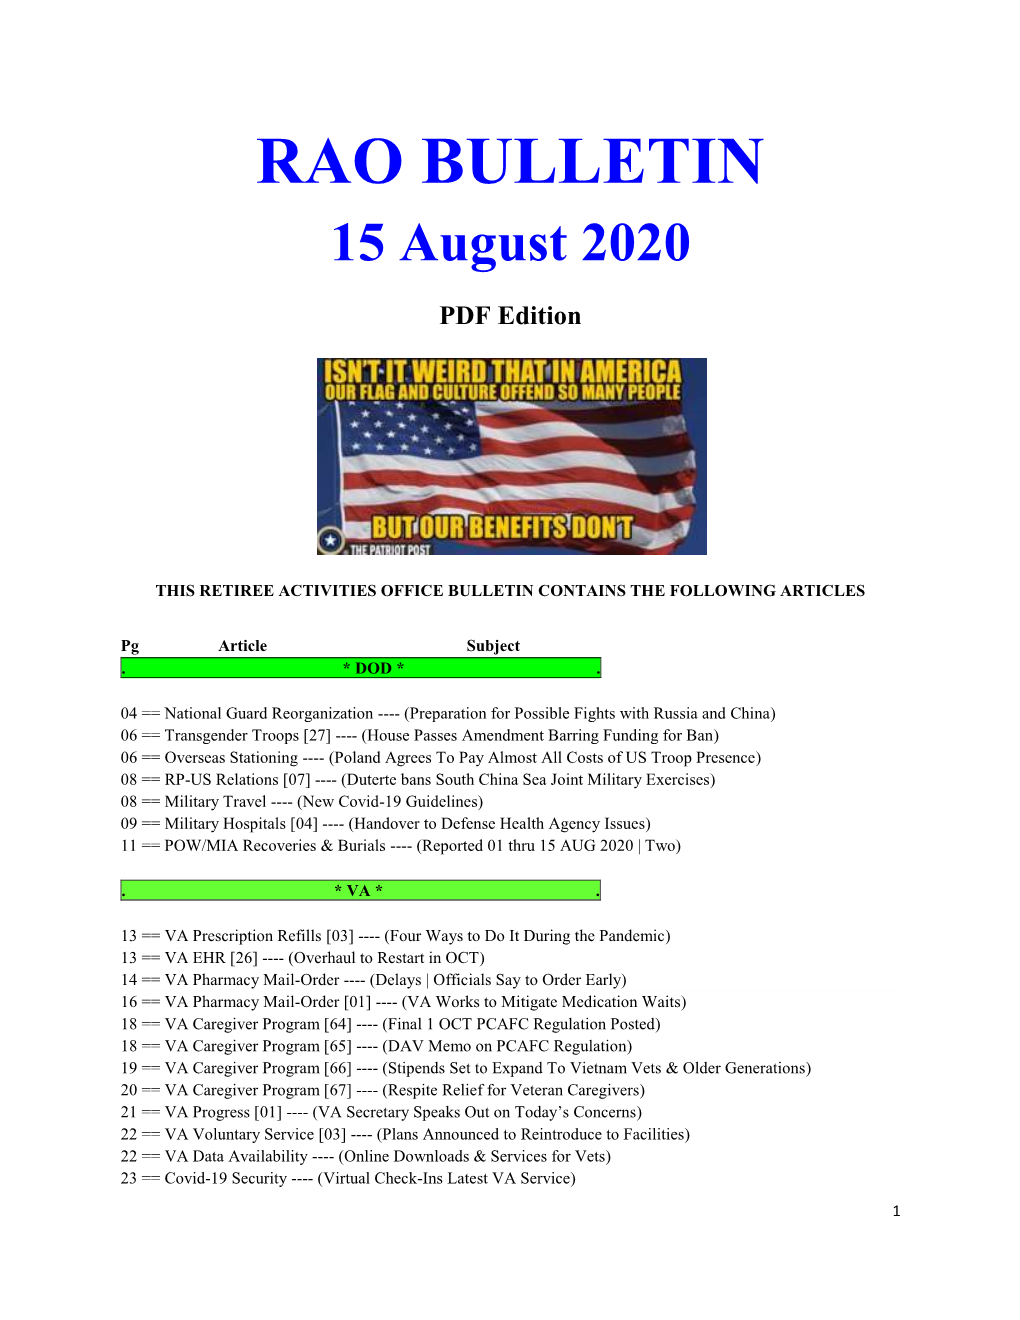 Bulletin 200815 (PDF Edition)